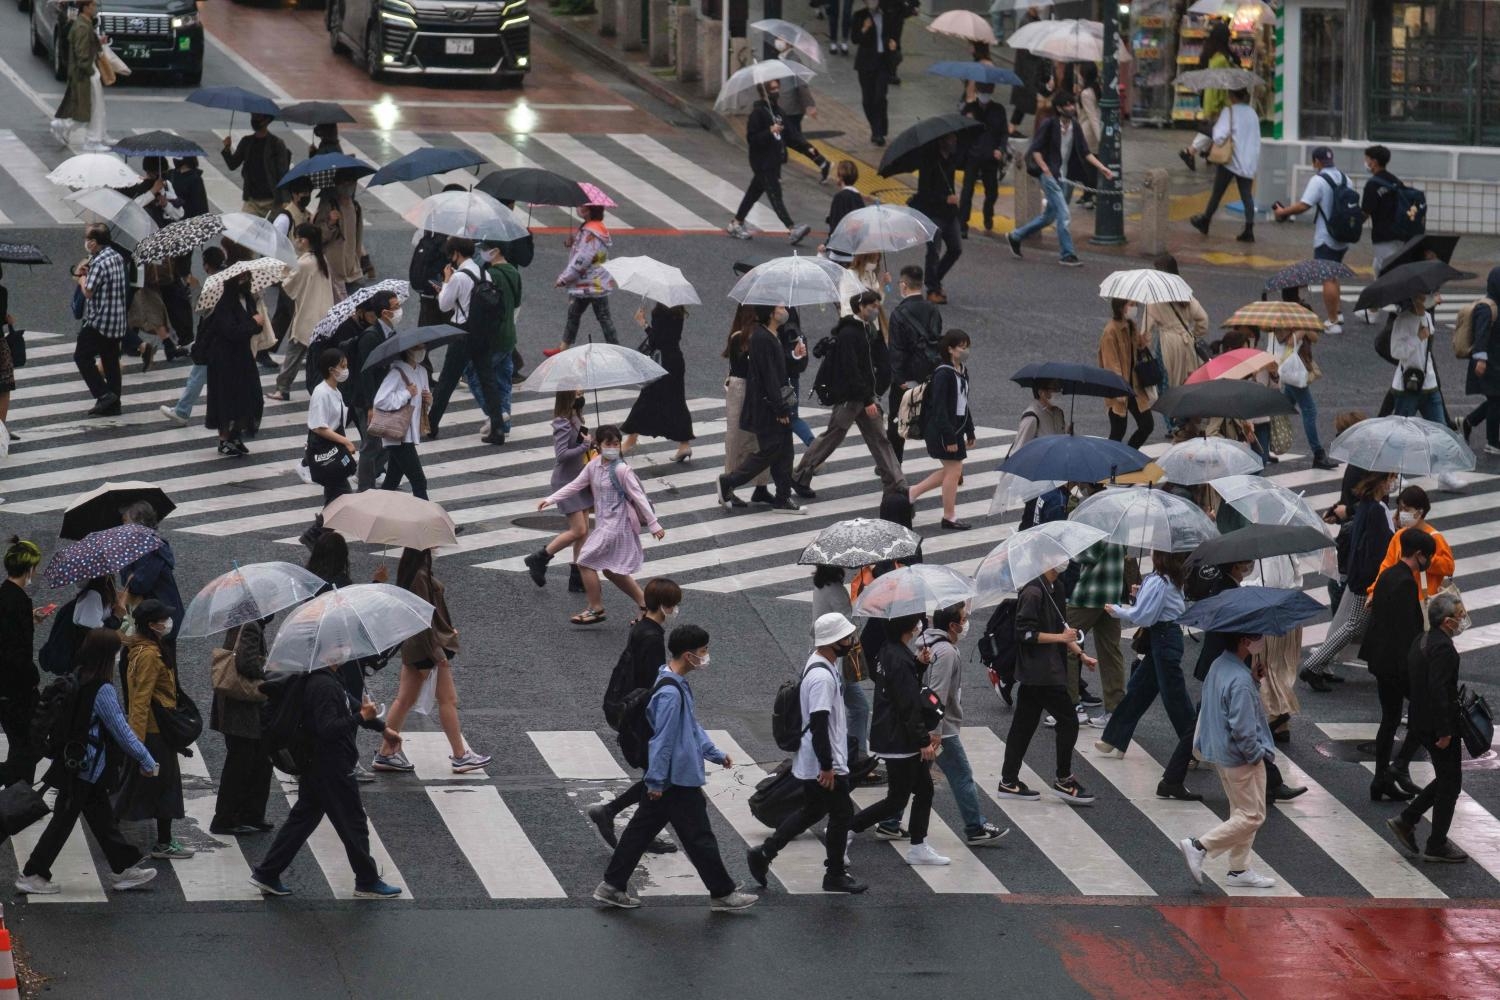 ญี่ปุ่นเตือนประชาชนเฝ้าระวังโควิดระลอกใหม่ หลังยอดติดเชื้อพุ่งจ่อแตะหลักแสน